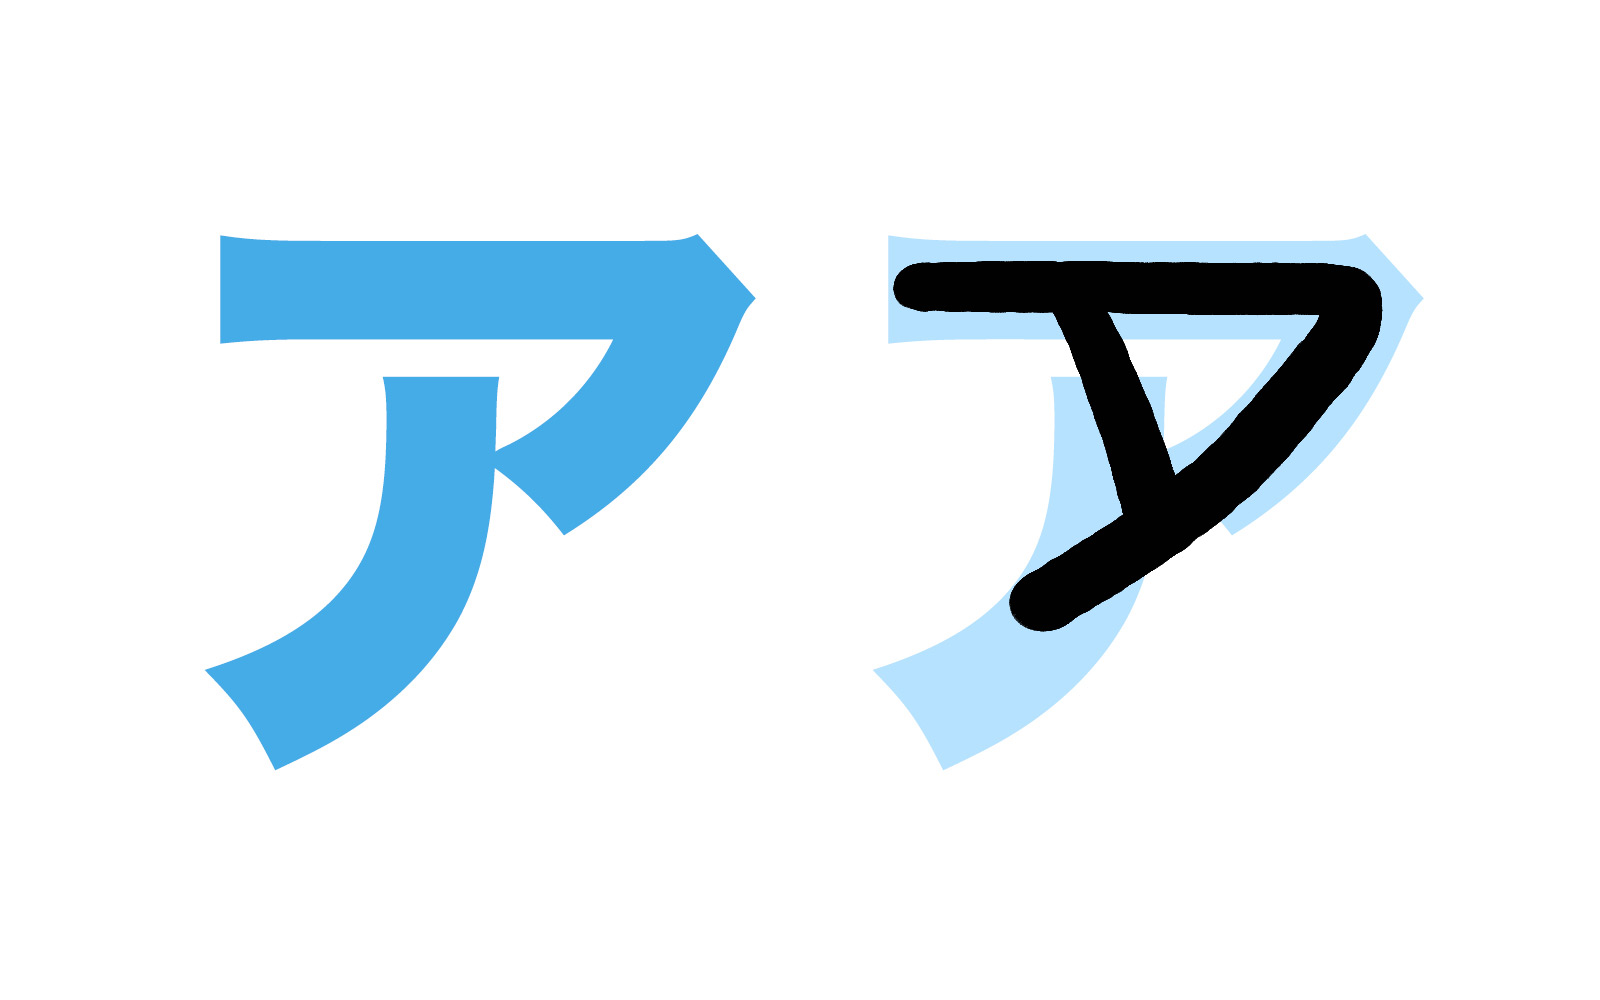 Katakana character ア mnemonic